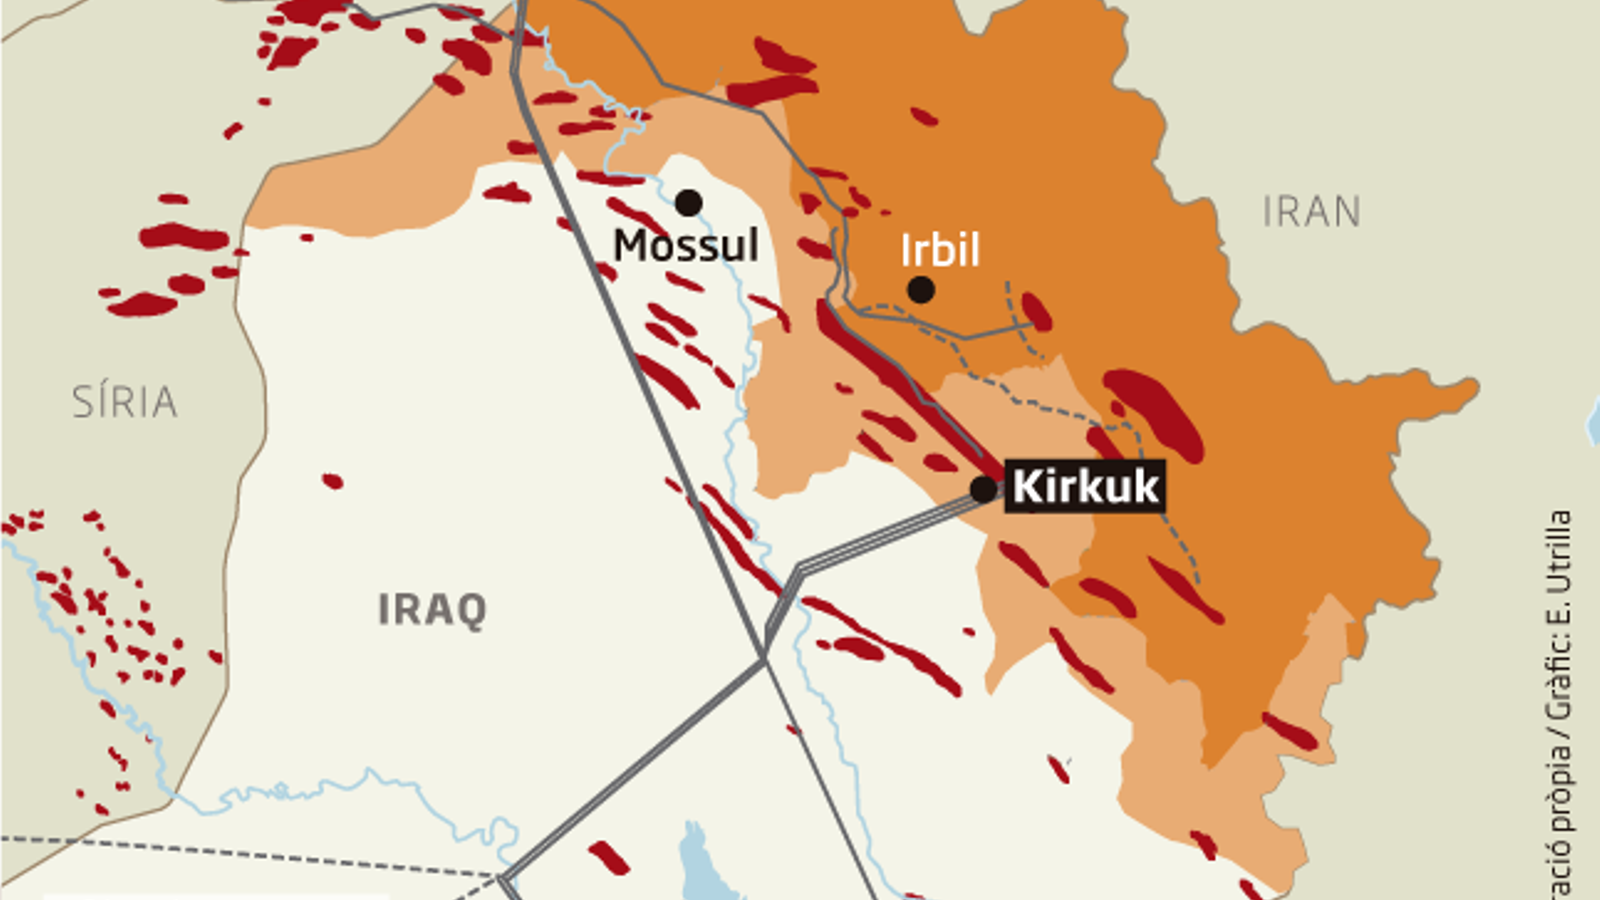 L’exèrcit iraquià entra a Kirkuk  en represàlia pel referèndum kurd